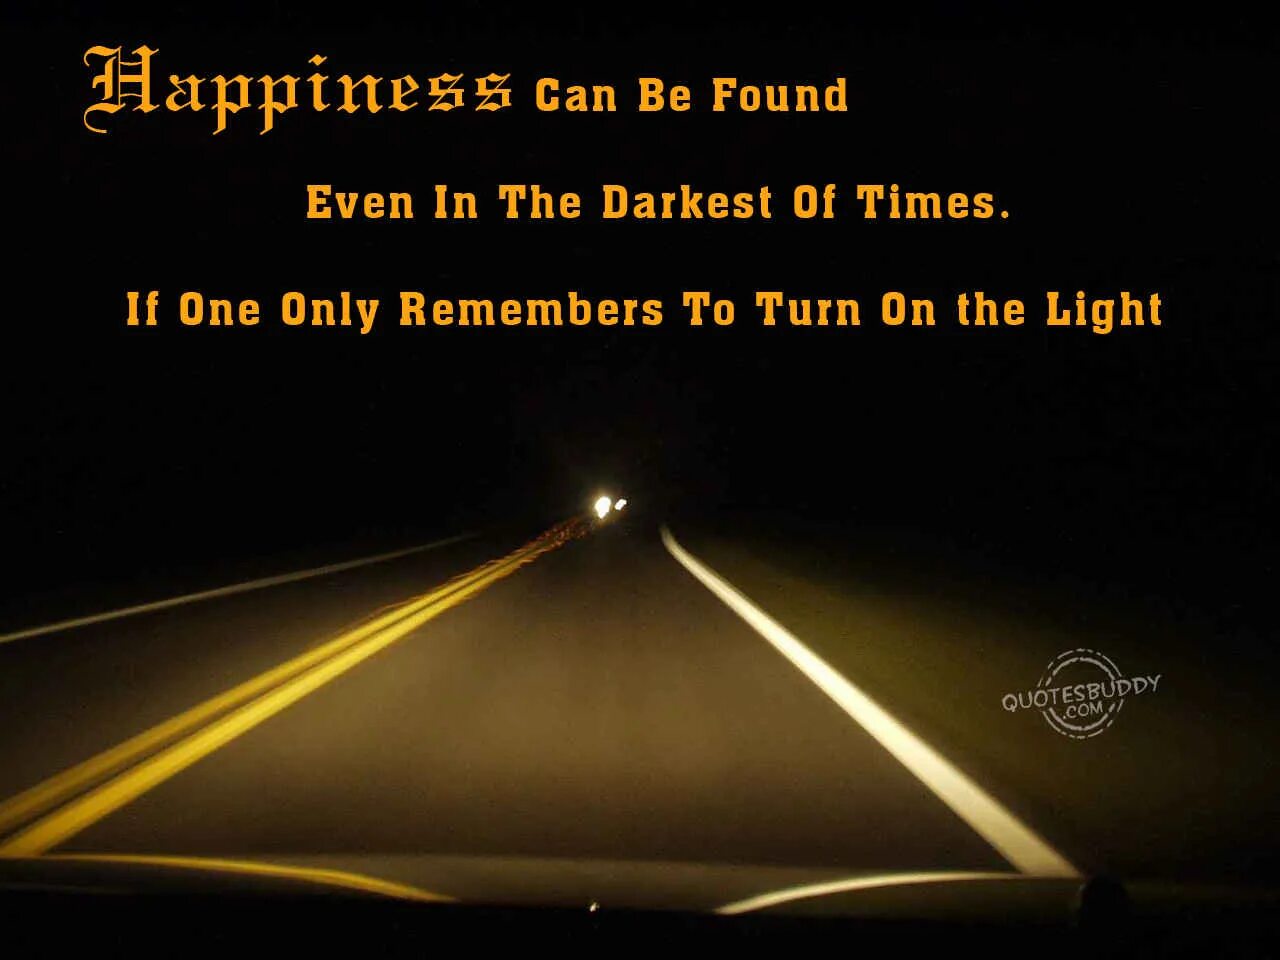 Включи свет лучше. Счастье можно найти даже в самые темные времена. Даже в самые те ные времена. Счастье можно найти даже в темные времена если обращаться к свету. Даже в самые темные времена.